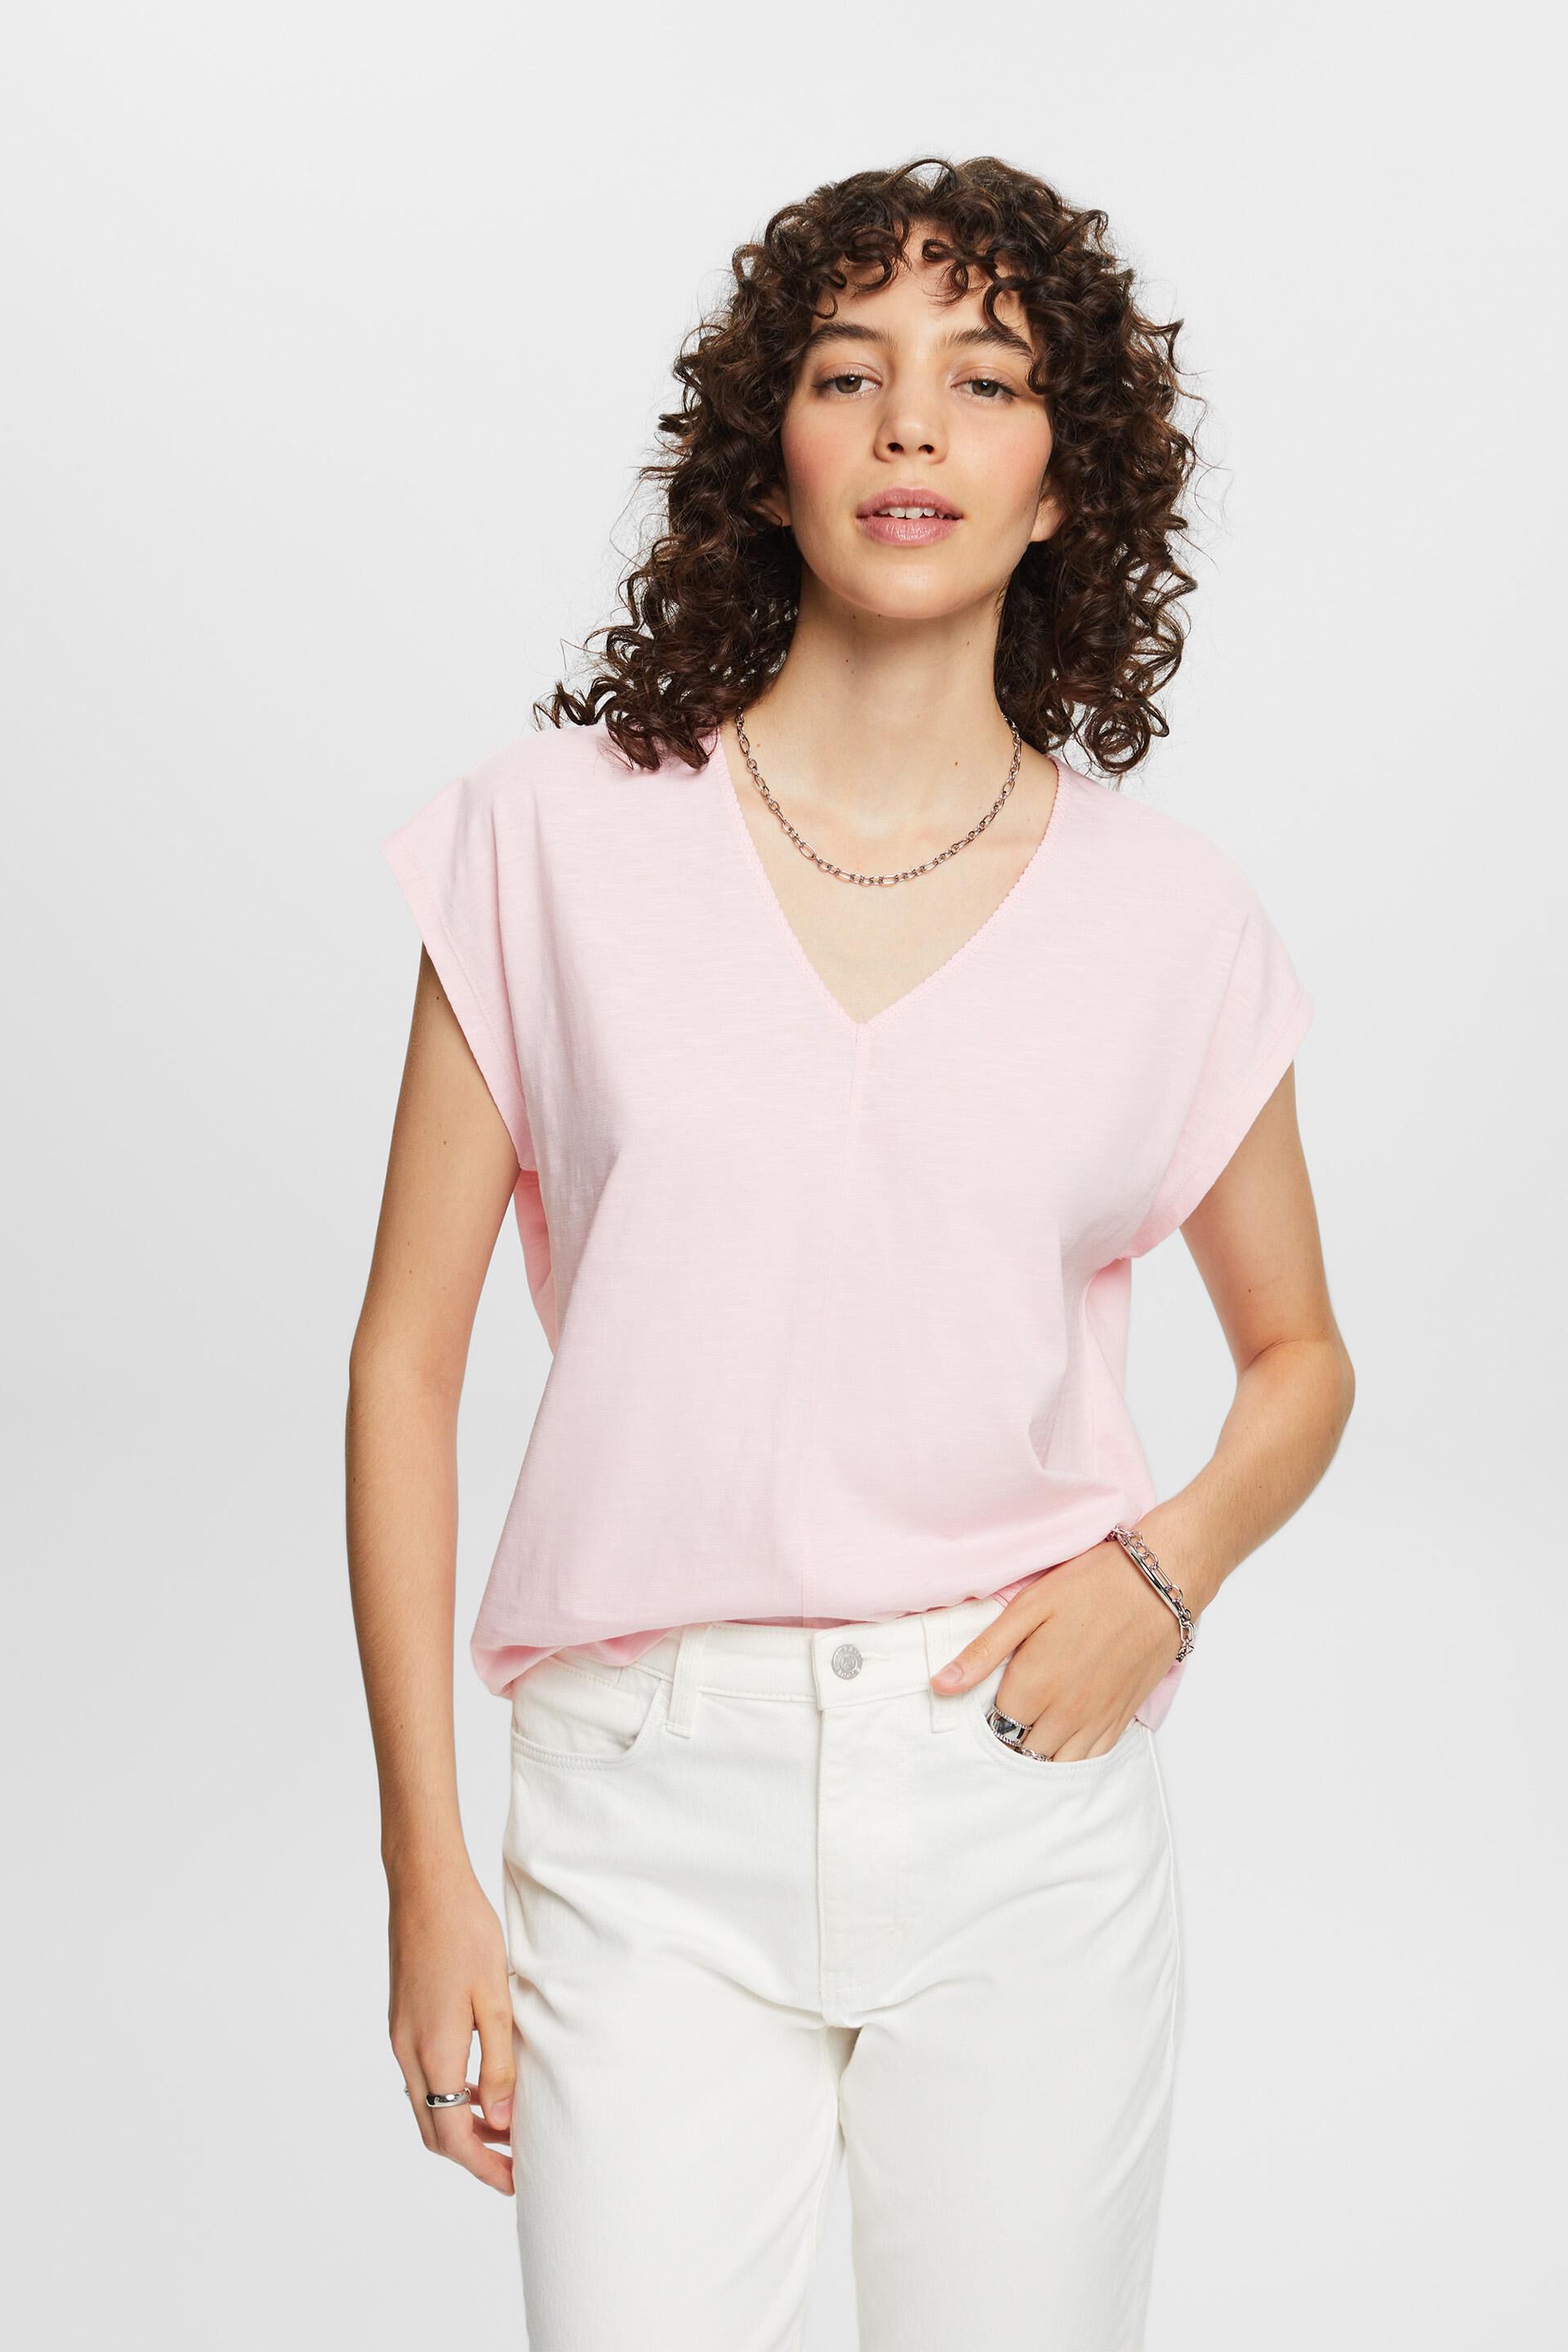 Esprit 100% decorative stitch, with V-neck cotton T-shirt